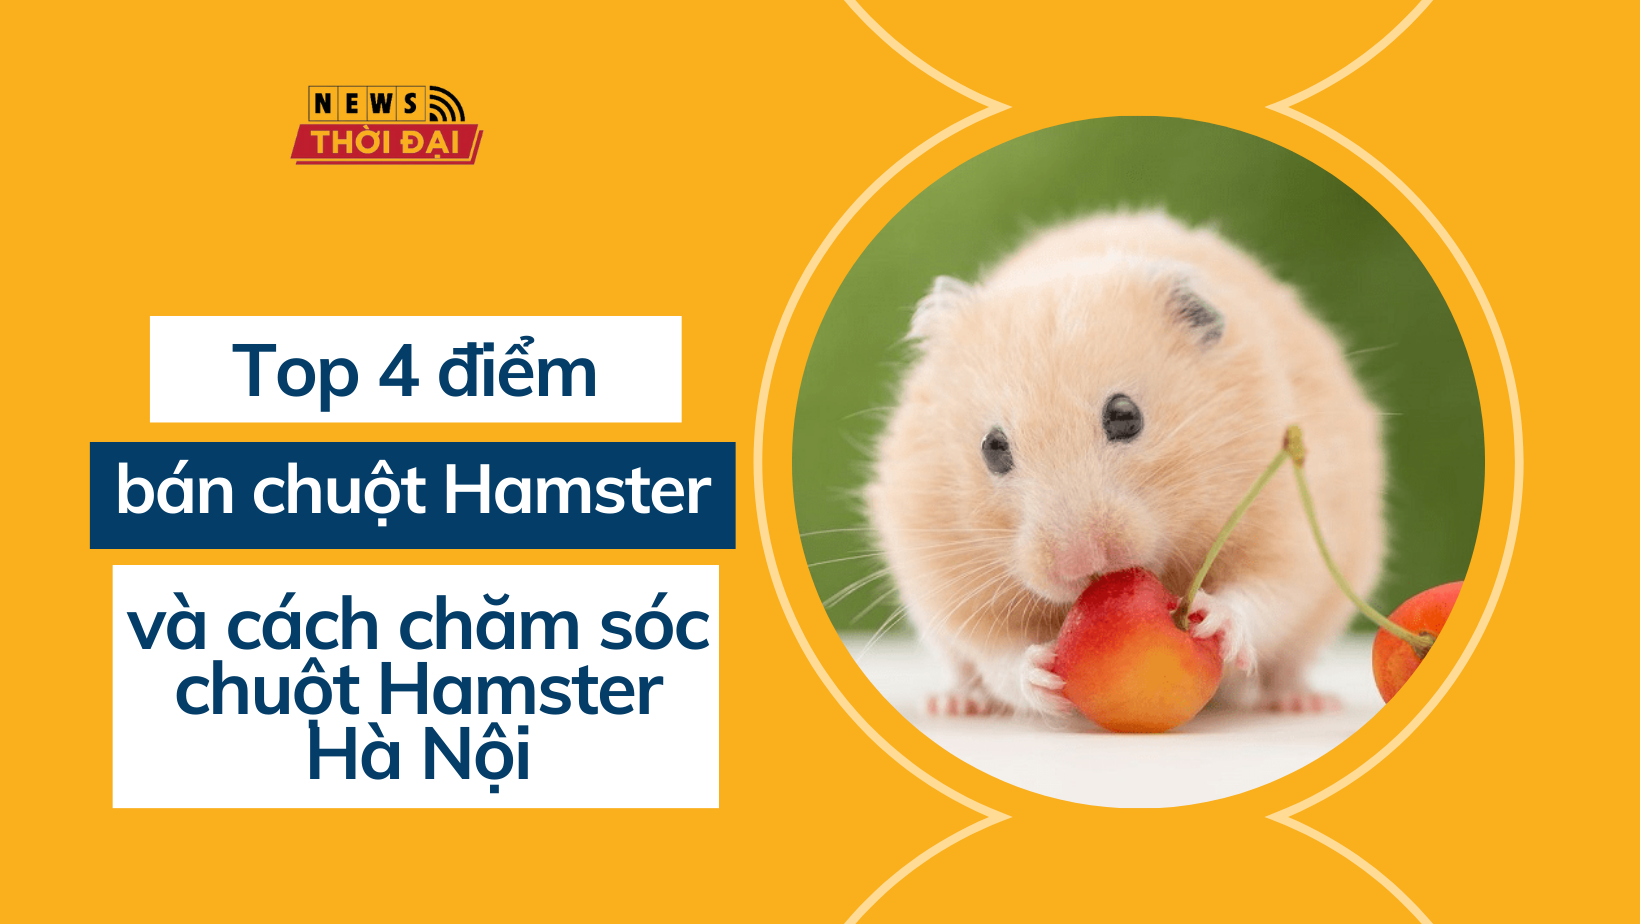 Top 4 điểm bán chuột Hamster và cách chăm sóc chuột Hamster Hà Nội